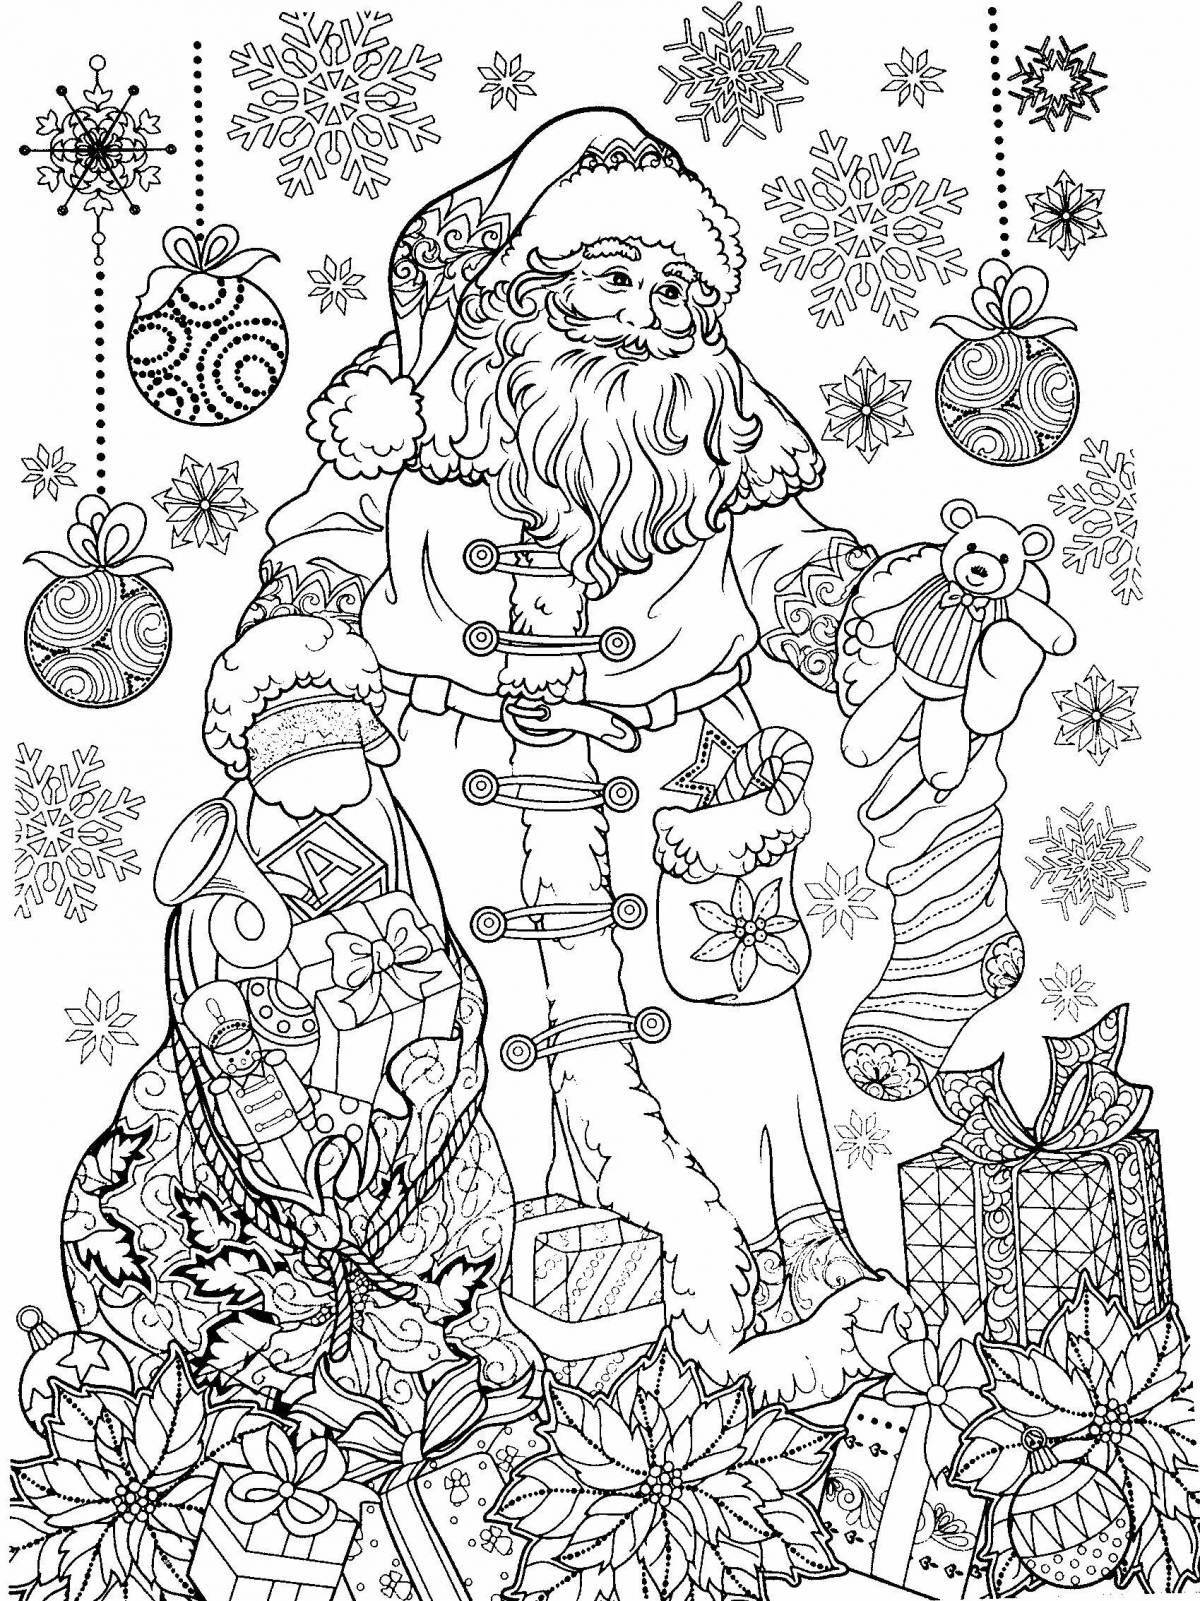 Shiny santa claus coloring book